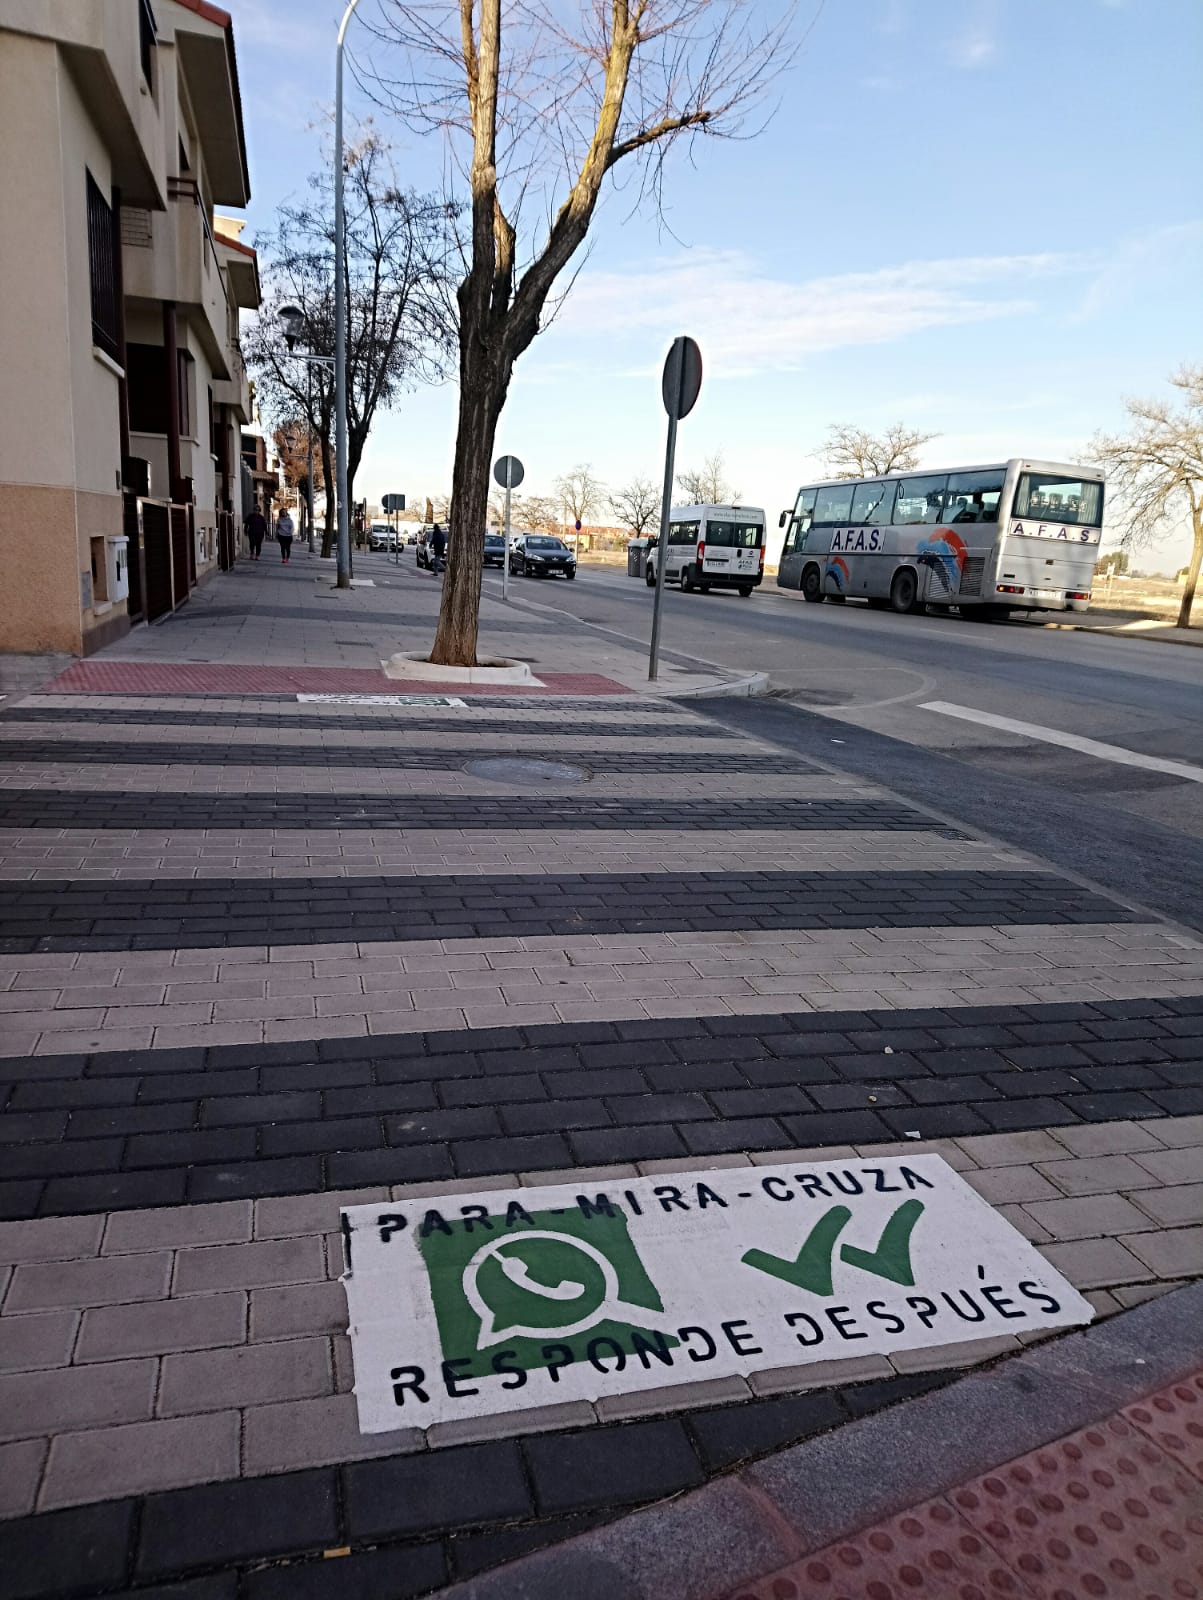 Por seguridad, el Ayuntamiento recuerda a los peatones “para, mira, cruza”